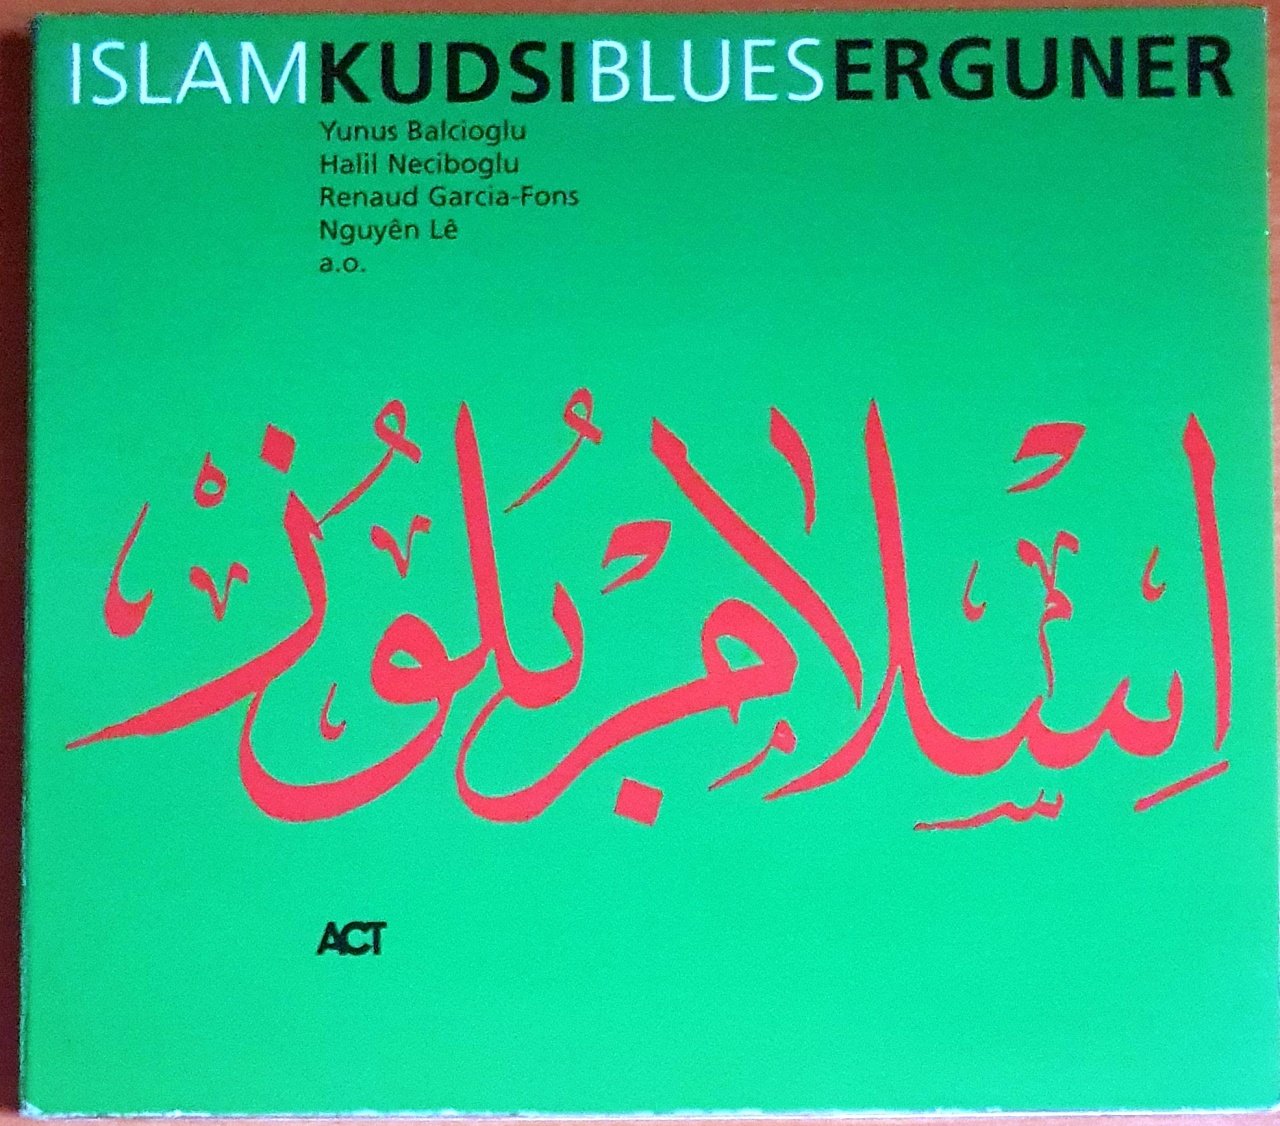 KUDSI ERGUNER - ISLAM BLUES (2001) - CD 2.EL